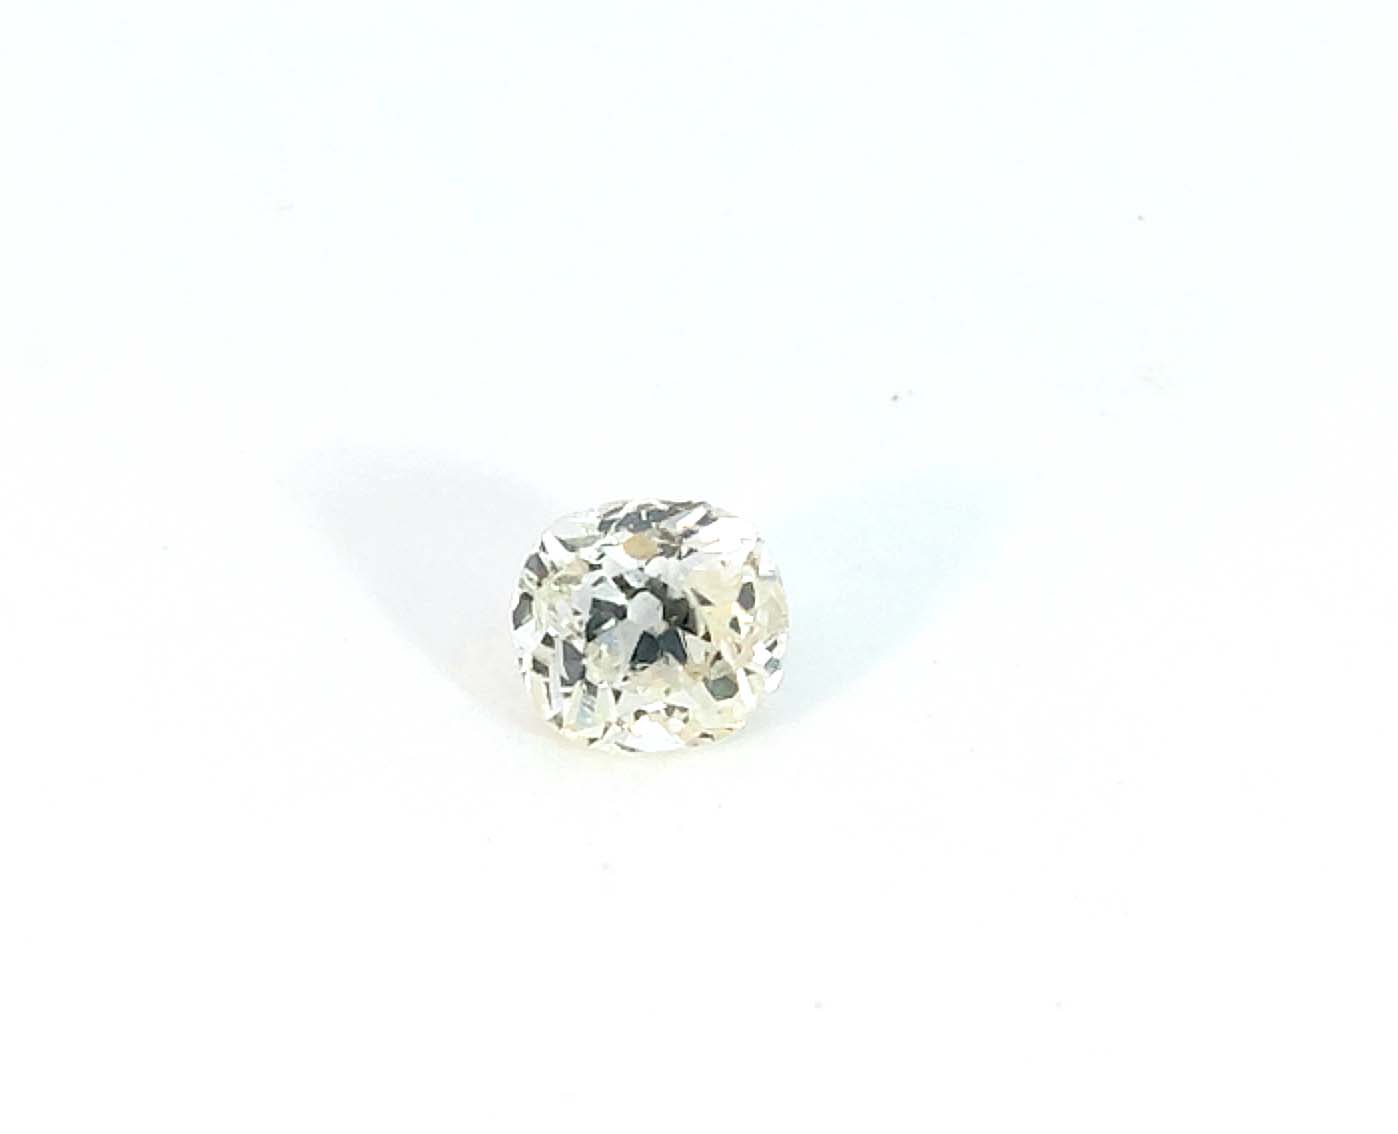  2,61 ct Diamant/Brillant l-M/grau vsi | Diamanten Brillanten